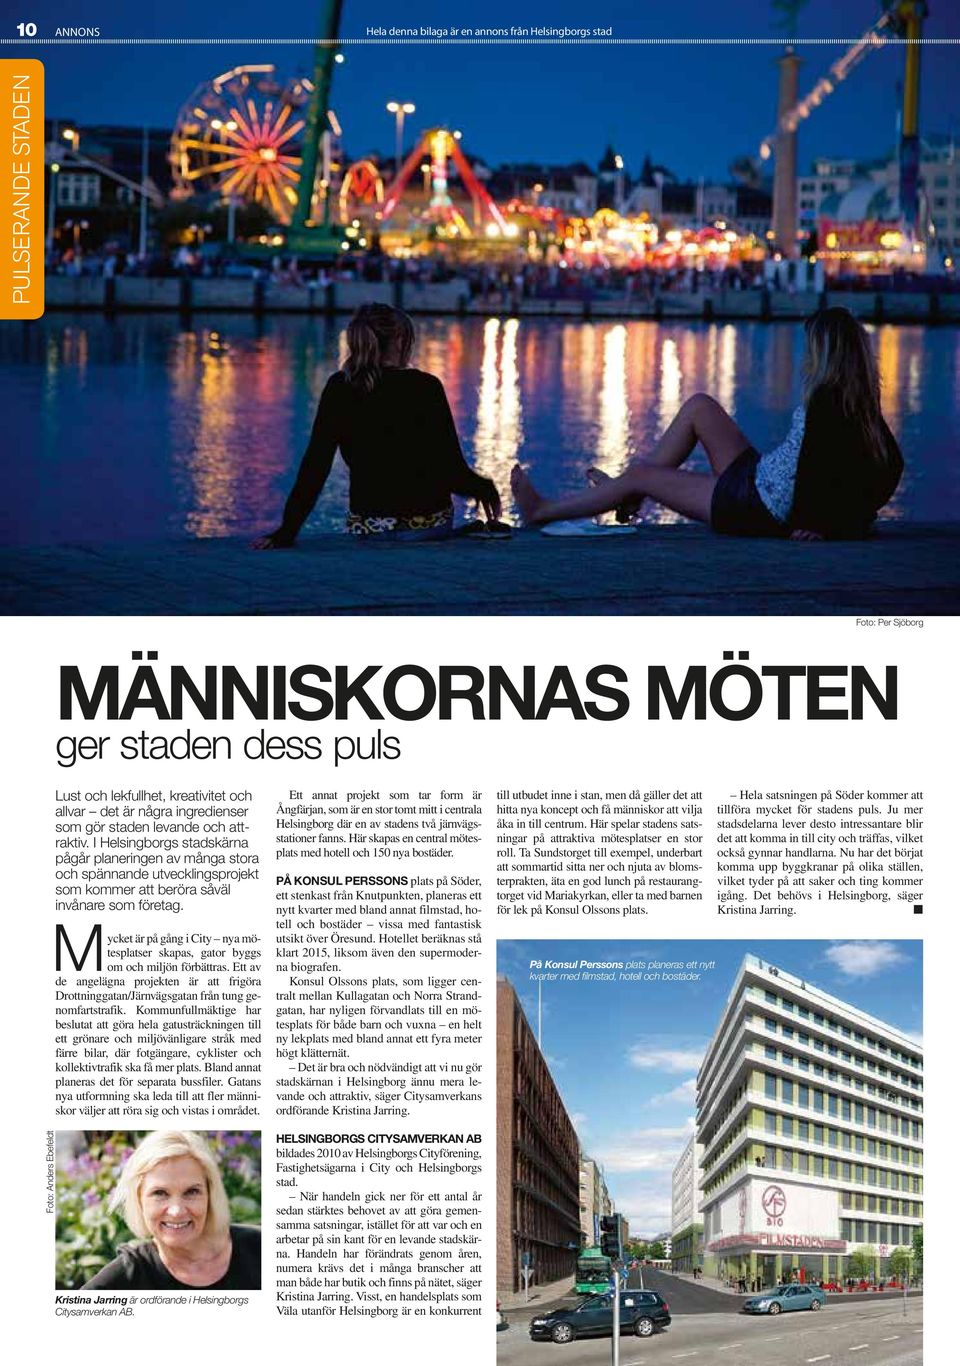 I Helsingborgs stadskärna pågår planeringen av många stora och spännande utvecklingsprojekt som kommer att beröra såväl invånare som företag.